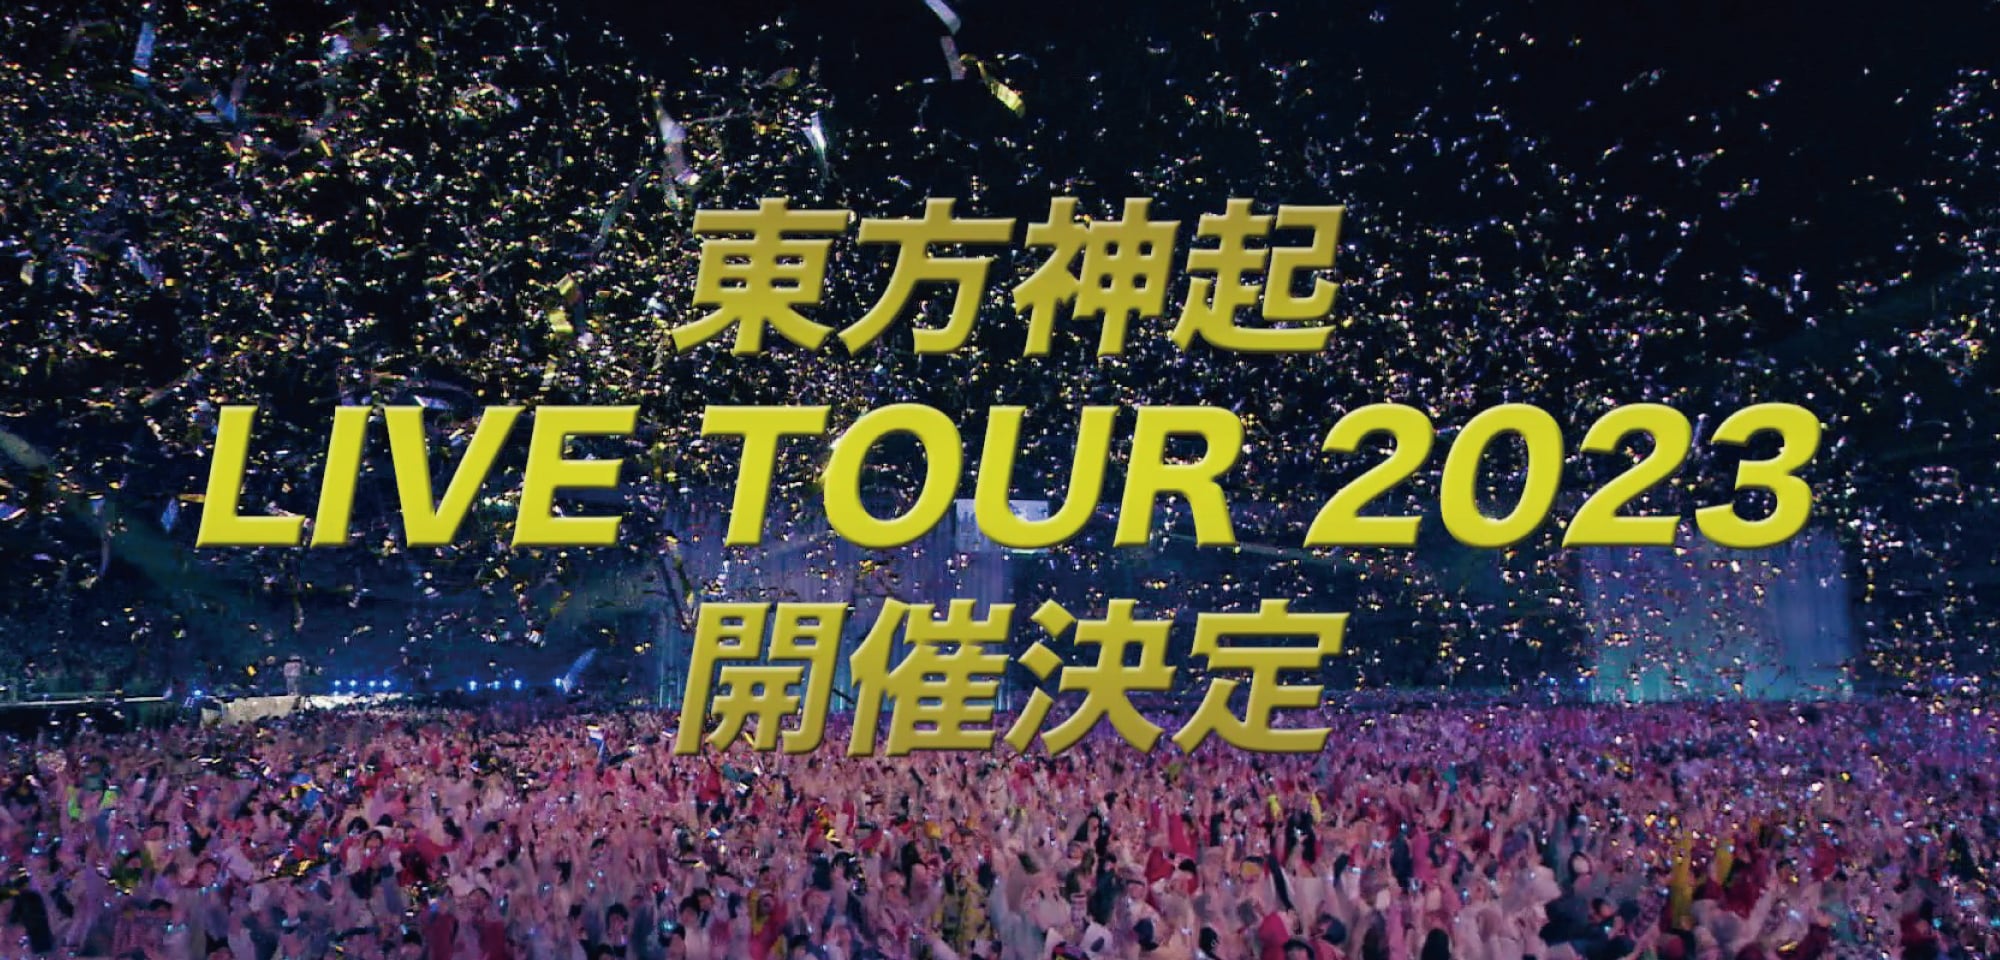 TOHOSHINKI LIVE TOUR 2023 to be held